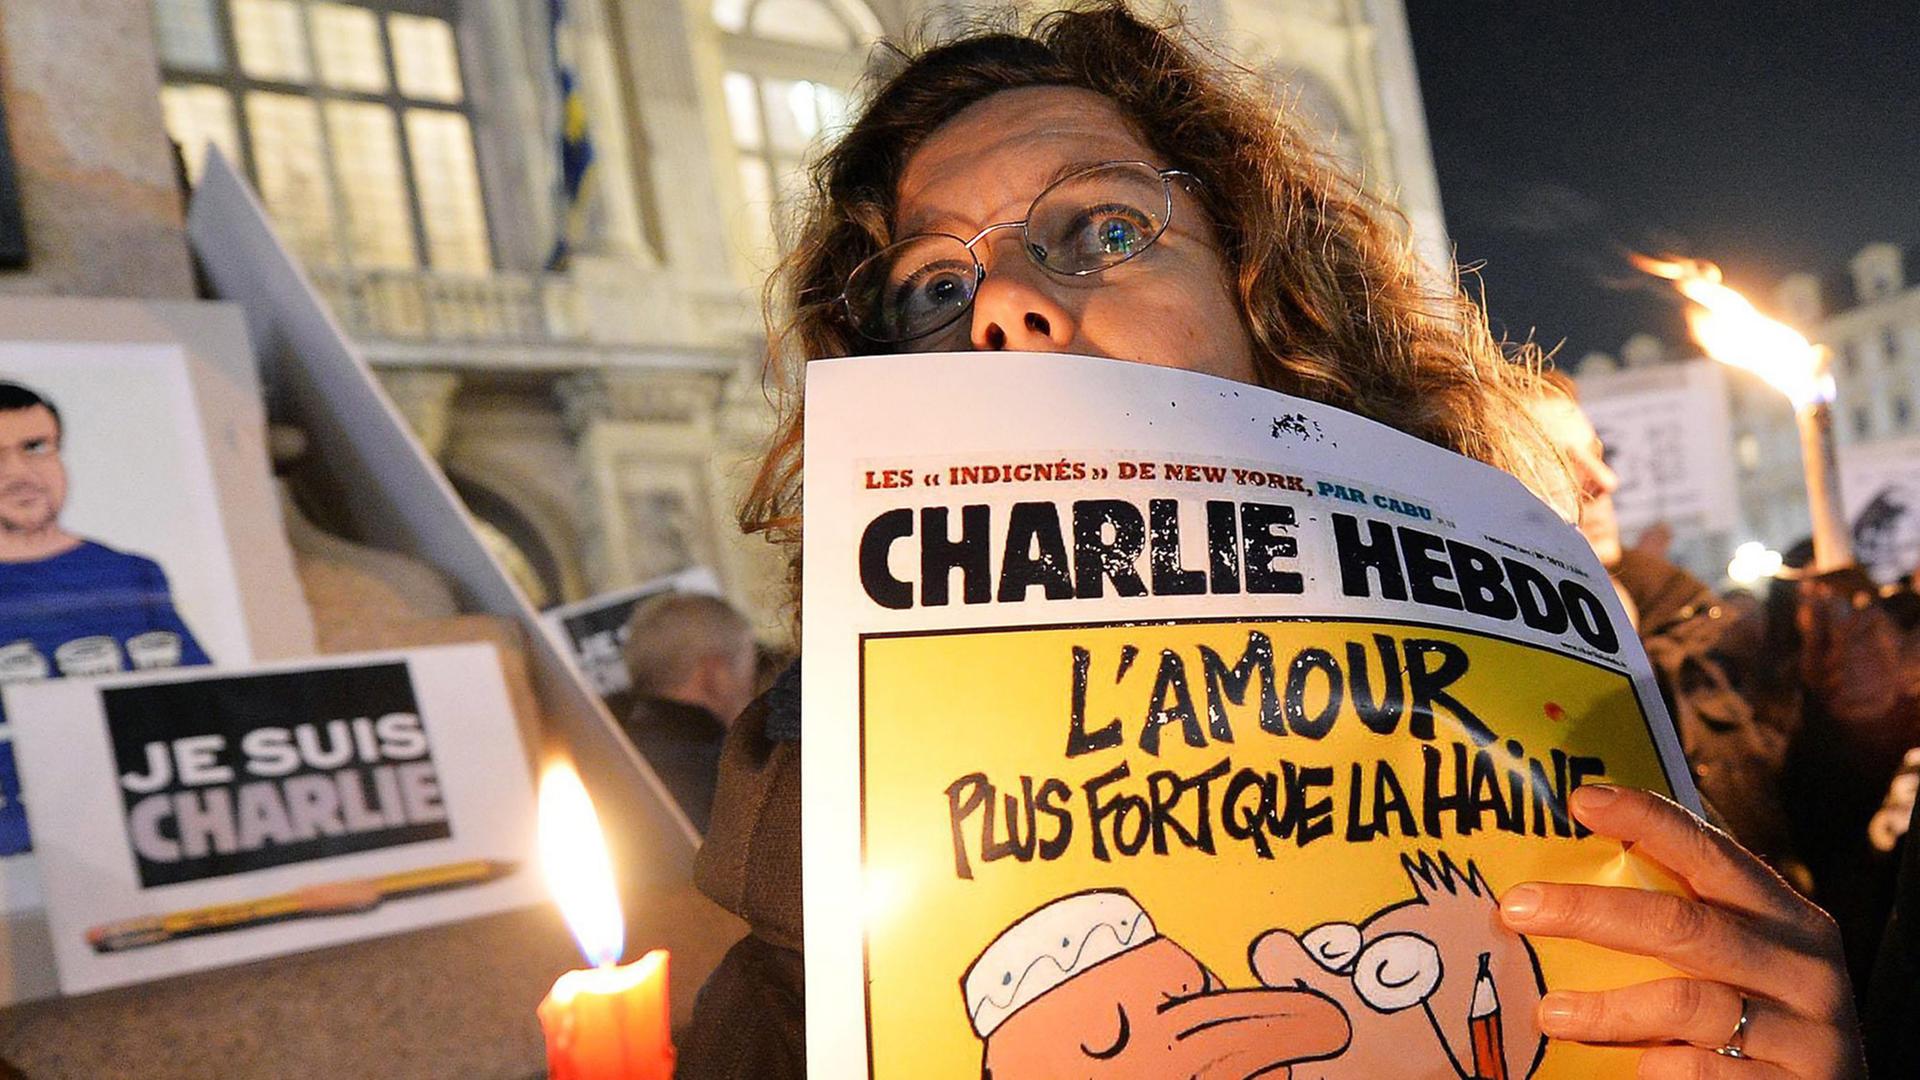 Nach dem Anschlag auf "Charlie Hebdo" gab es viele Zeichen der Solidarität - auch international (wie hier in Turin).